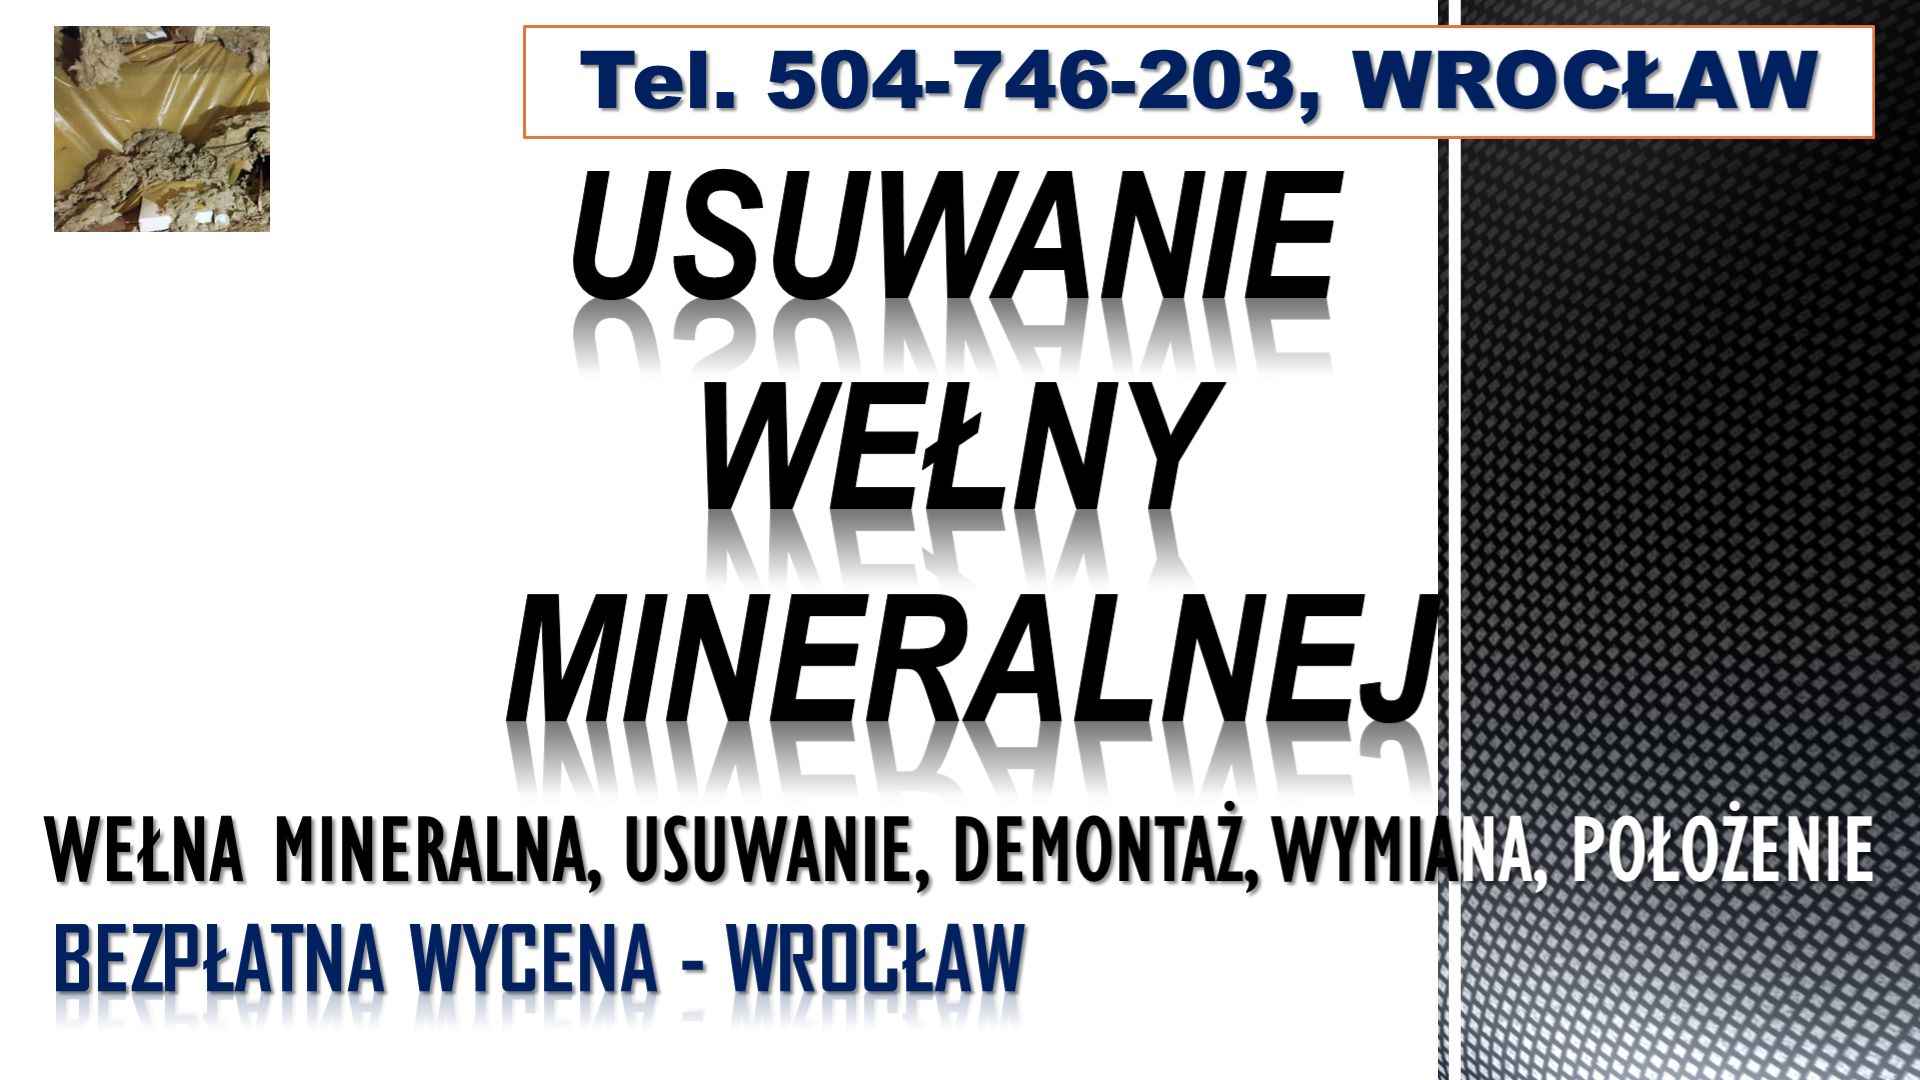 Usuwanie wełny mineralnej, cena, tel. 504-746-203. Wrocław, demontaż, Psie Pole - zdjęcie 4